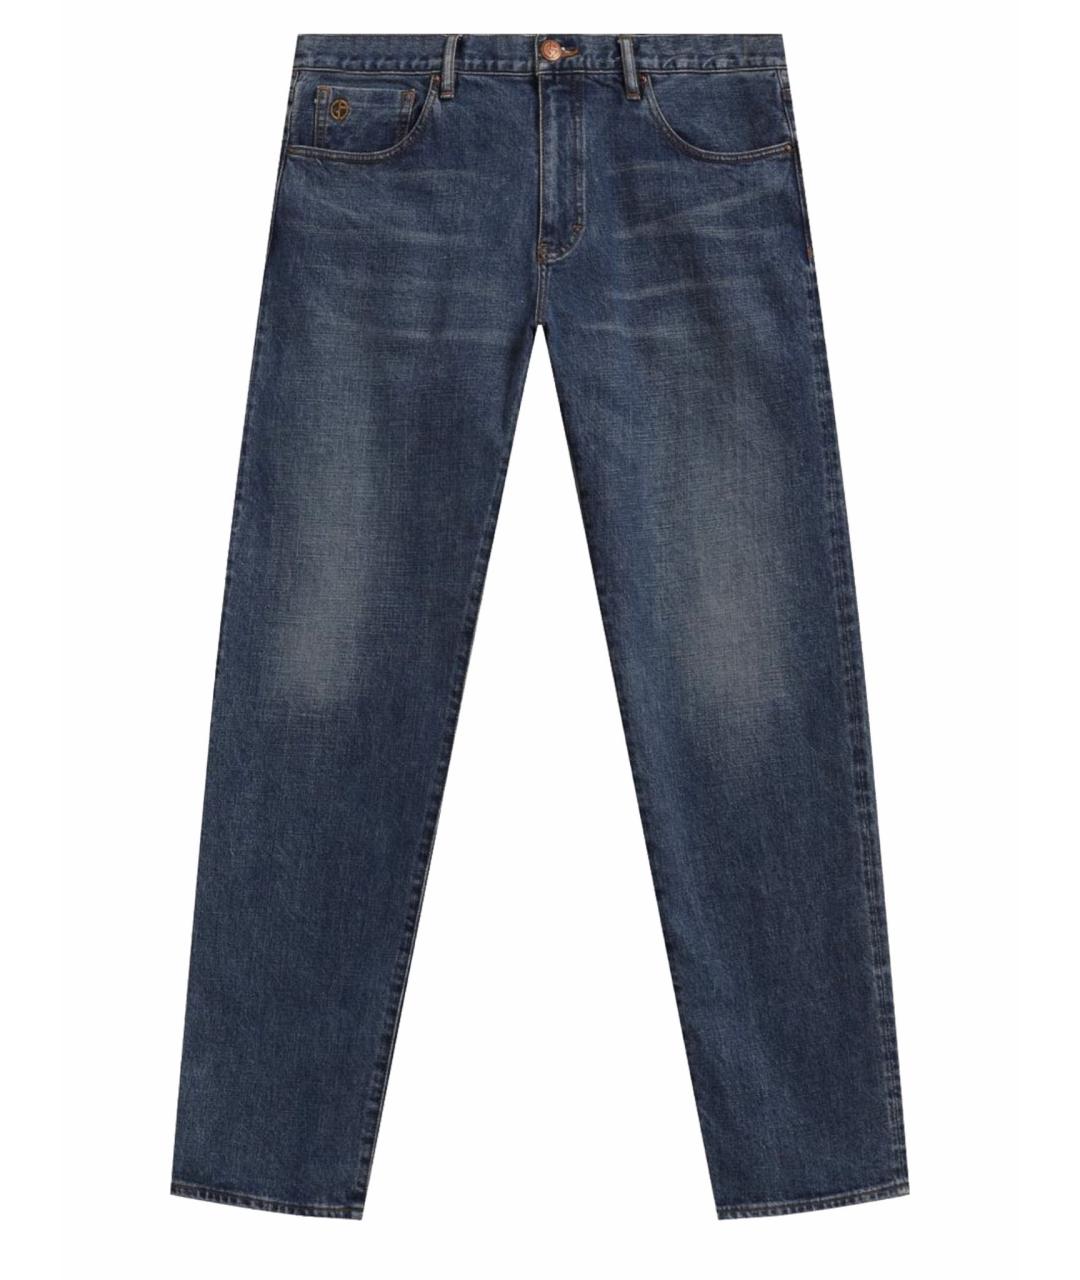 GIORGIO ARMANI Синие хлопковые джинсы скинни, фото 1